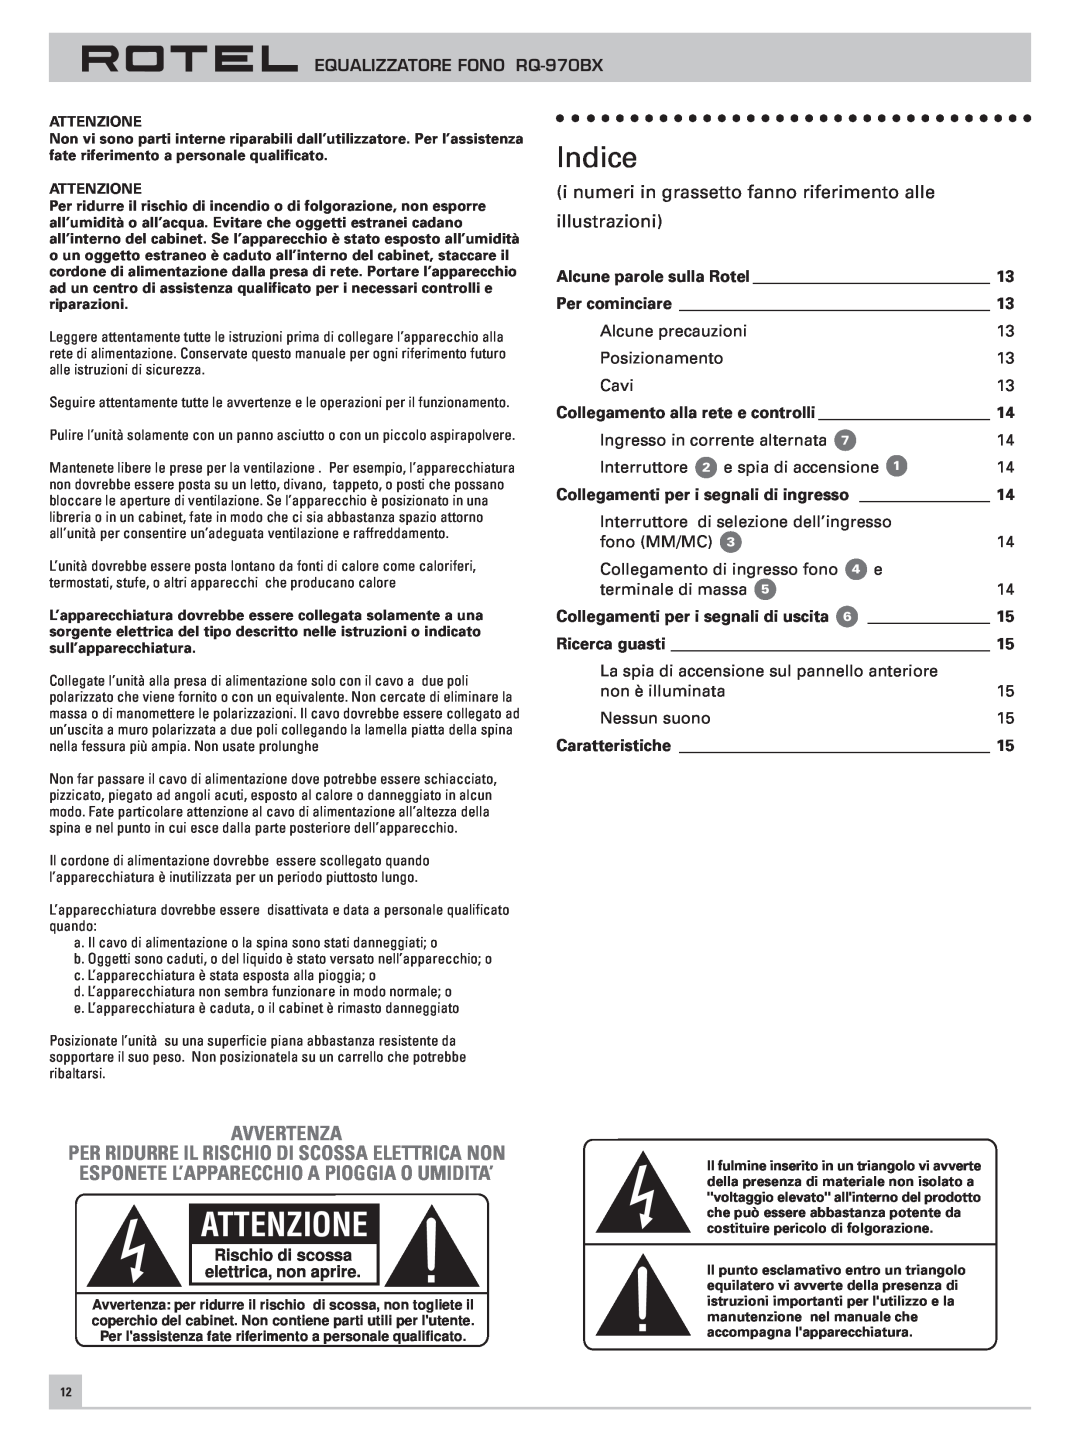 Rotel RQ-970BX owner manual Indice, Avvertenza, i numeri in grassetto fanno riferimento alle, illustrazioni, Attenzione 